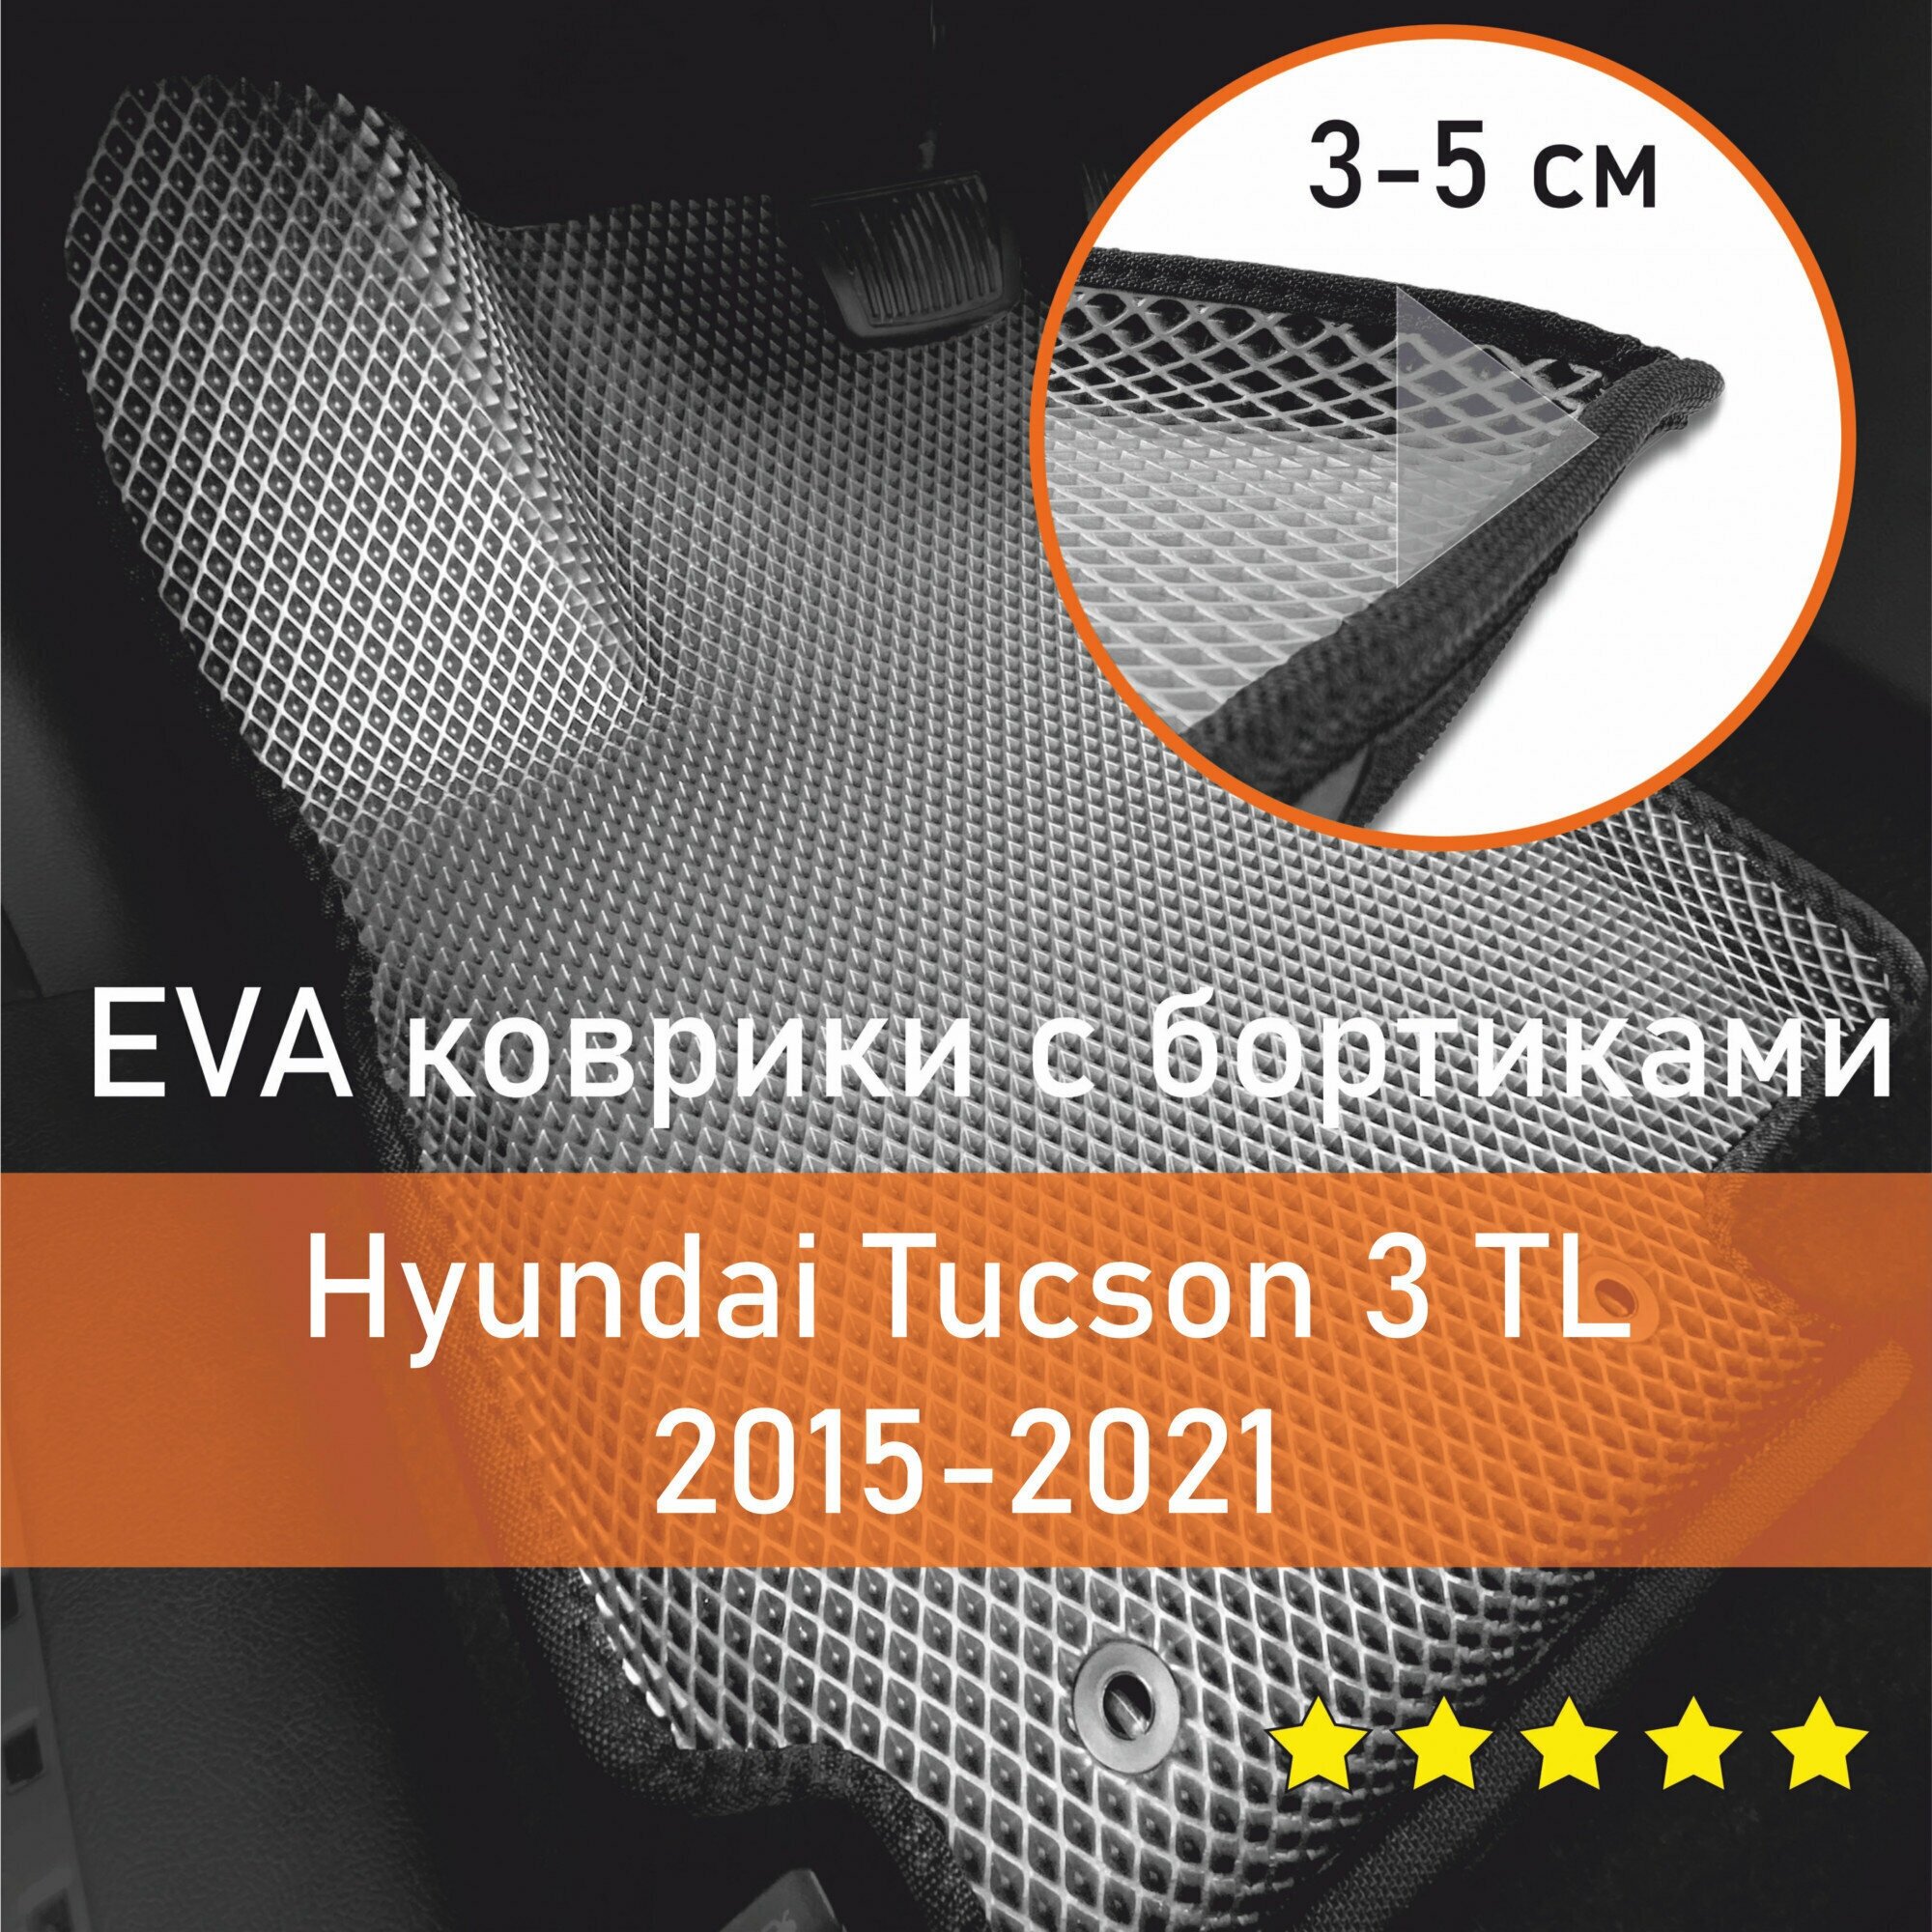 3Д коврики ЕВА EVA, ЭВА с бортиками на Hyundai Tucson 3 TL 2015-2021 Хендай Хундай, Хендэ Туксон Левый руль Ромб Серый с черной окантовкой